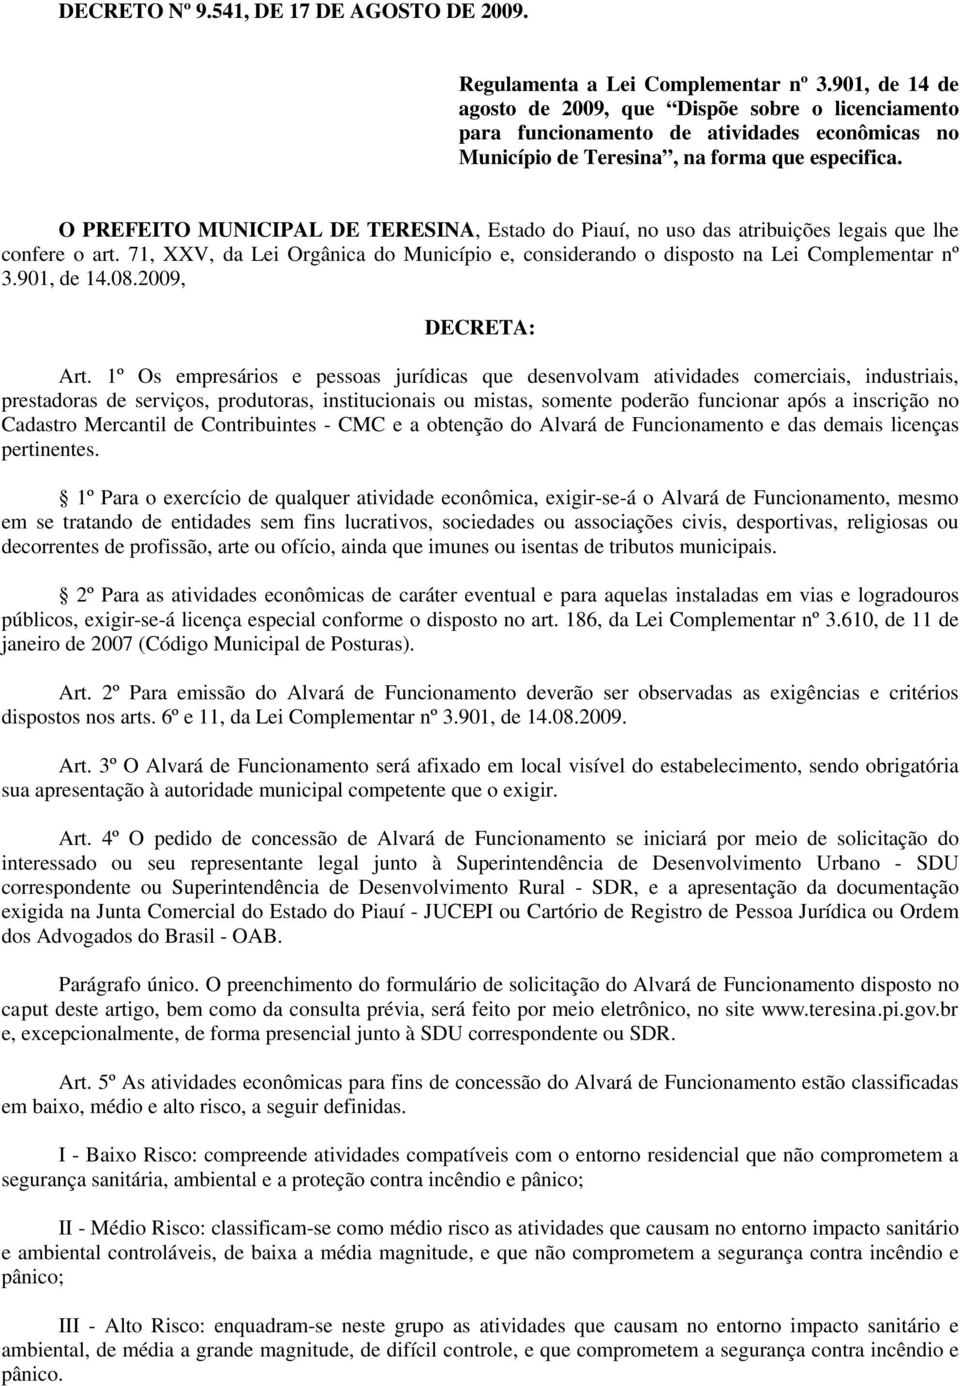 O PREFEITO MUNICIPAL DE TERESINA, Estado do Piauí, no uso das atribuições legais que lhe confere o art. 71, XXV, da Lei Orgânica do Município e, considerando o disposto na Lei Complementar nº 3.